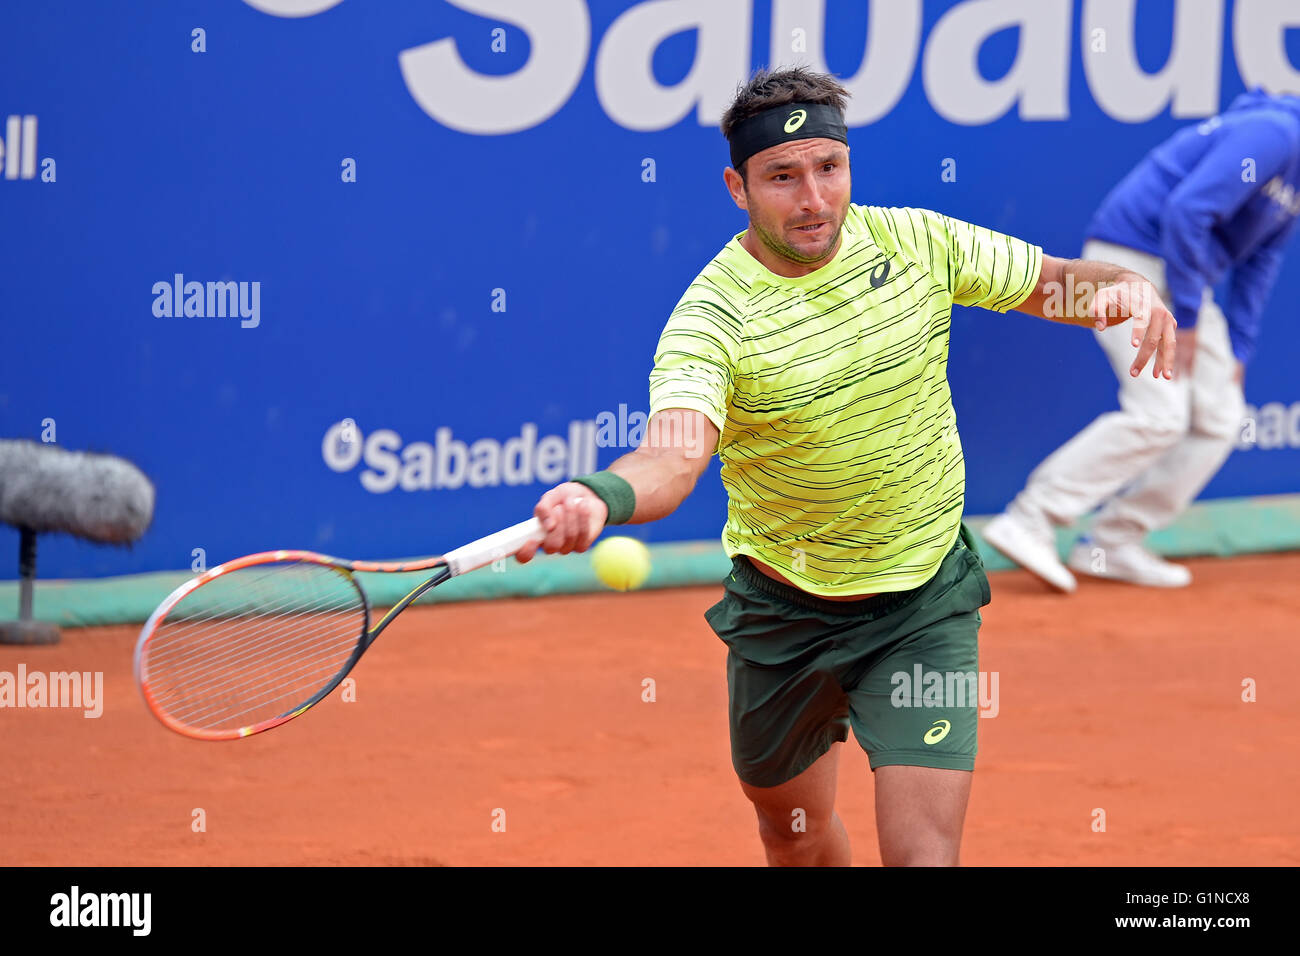 Barcelone - 20 avr : Marinko Bey (joueur de tennis) joue à l'ATP Barcelone ouvert. Banque D'Images